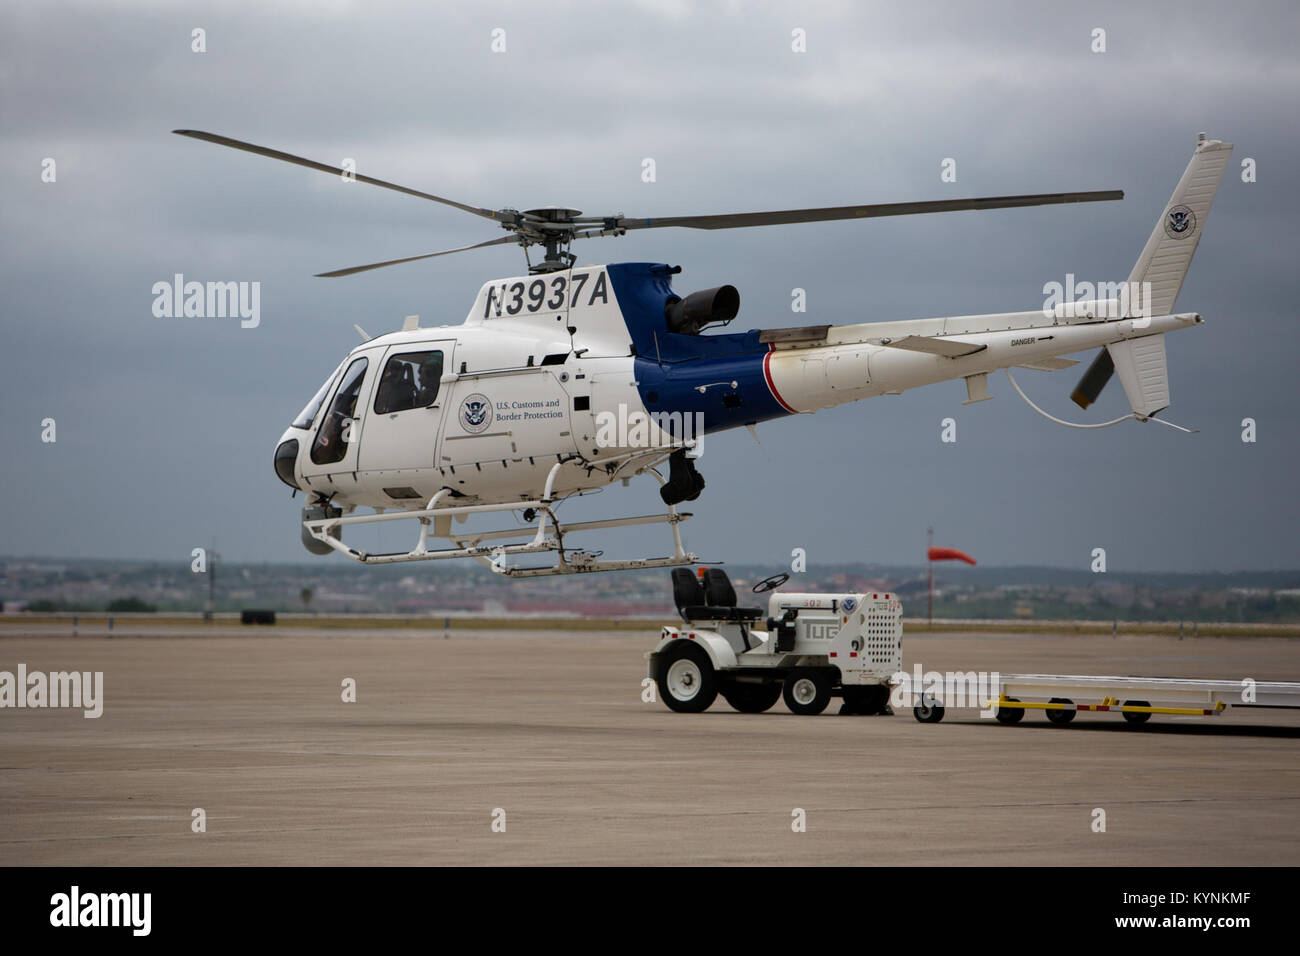 Einer US-amerikanischen Zoll- und Grenzschutzbehörden, Luft und Marine Operations pilot-aus Laredo, Texas zieht aus dem flug Linie in einem aerostar Hubschrauber Sicherheitsstreifen für den Tag zu führen. Fotograf: Donna Burton Stockfoto